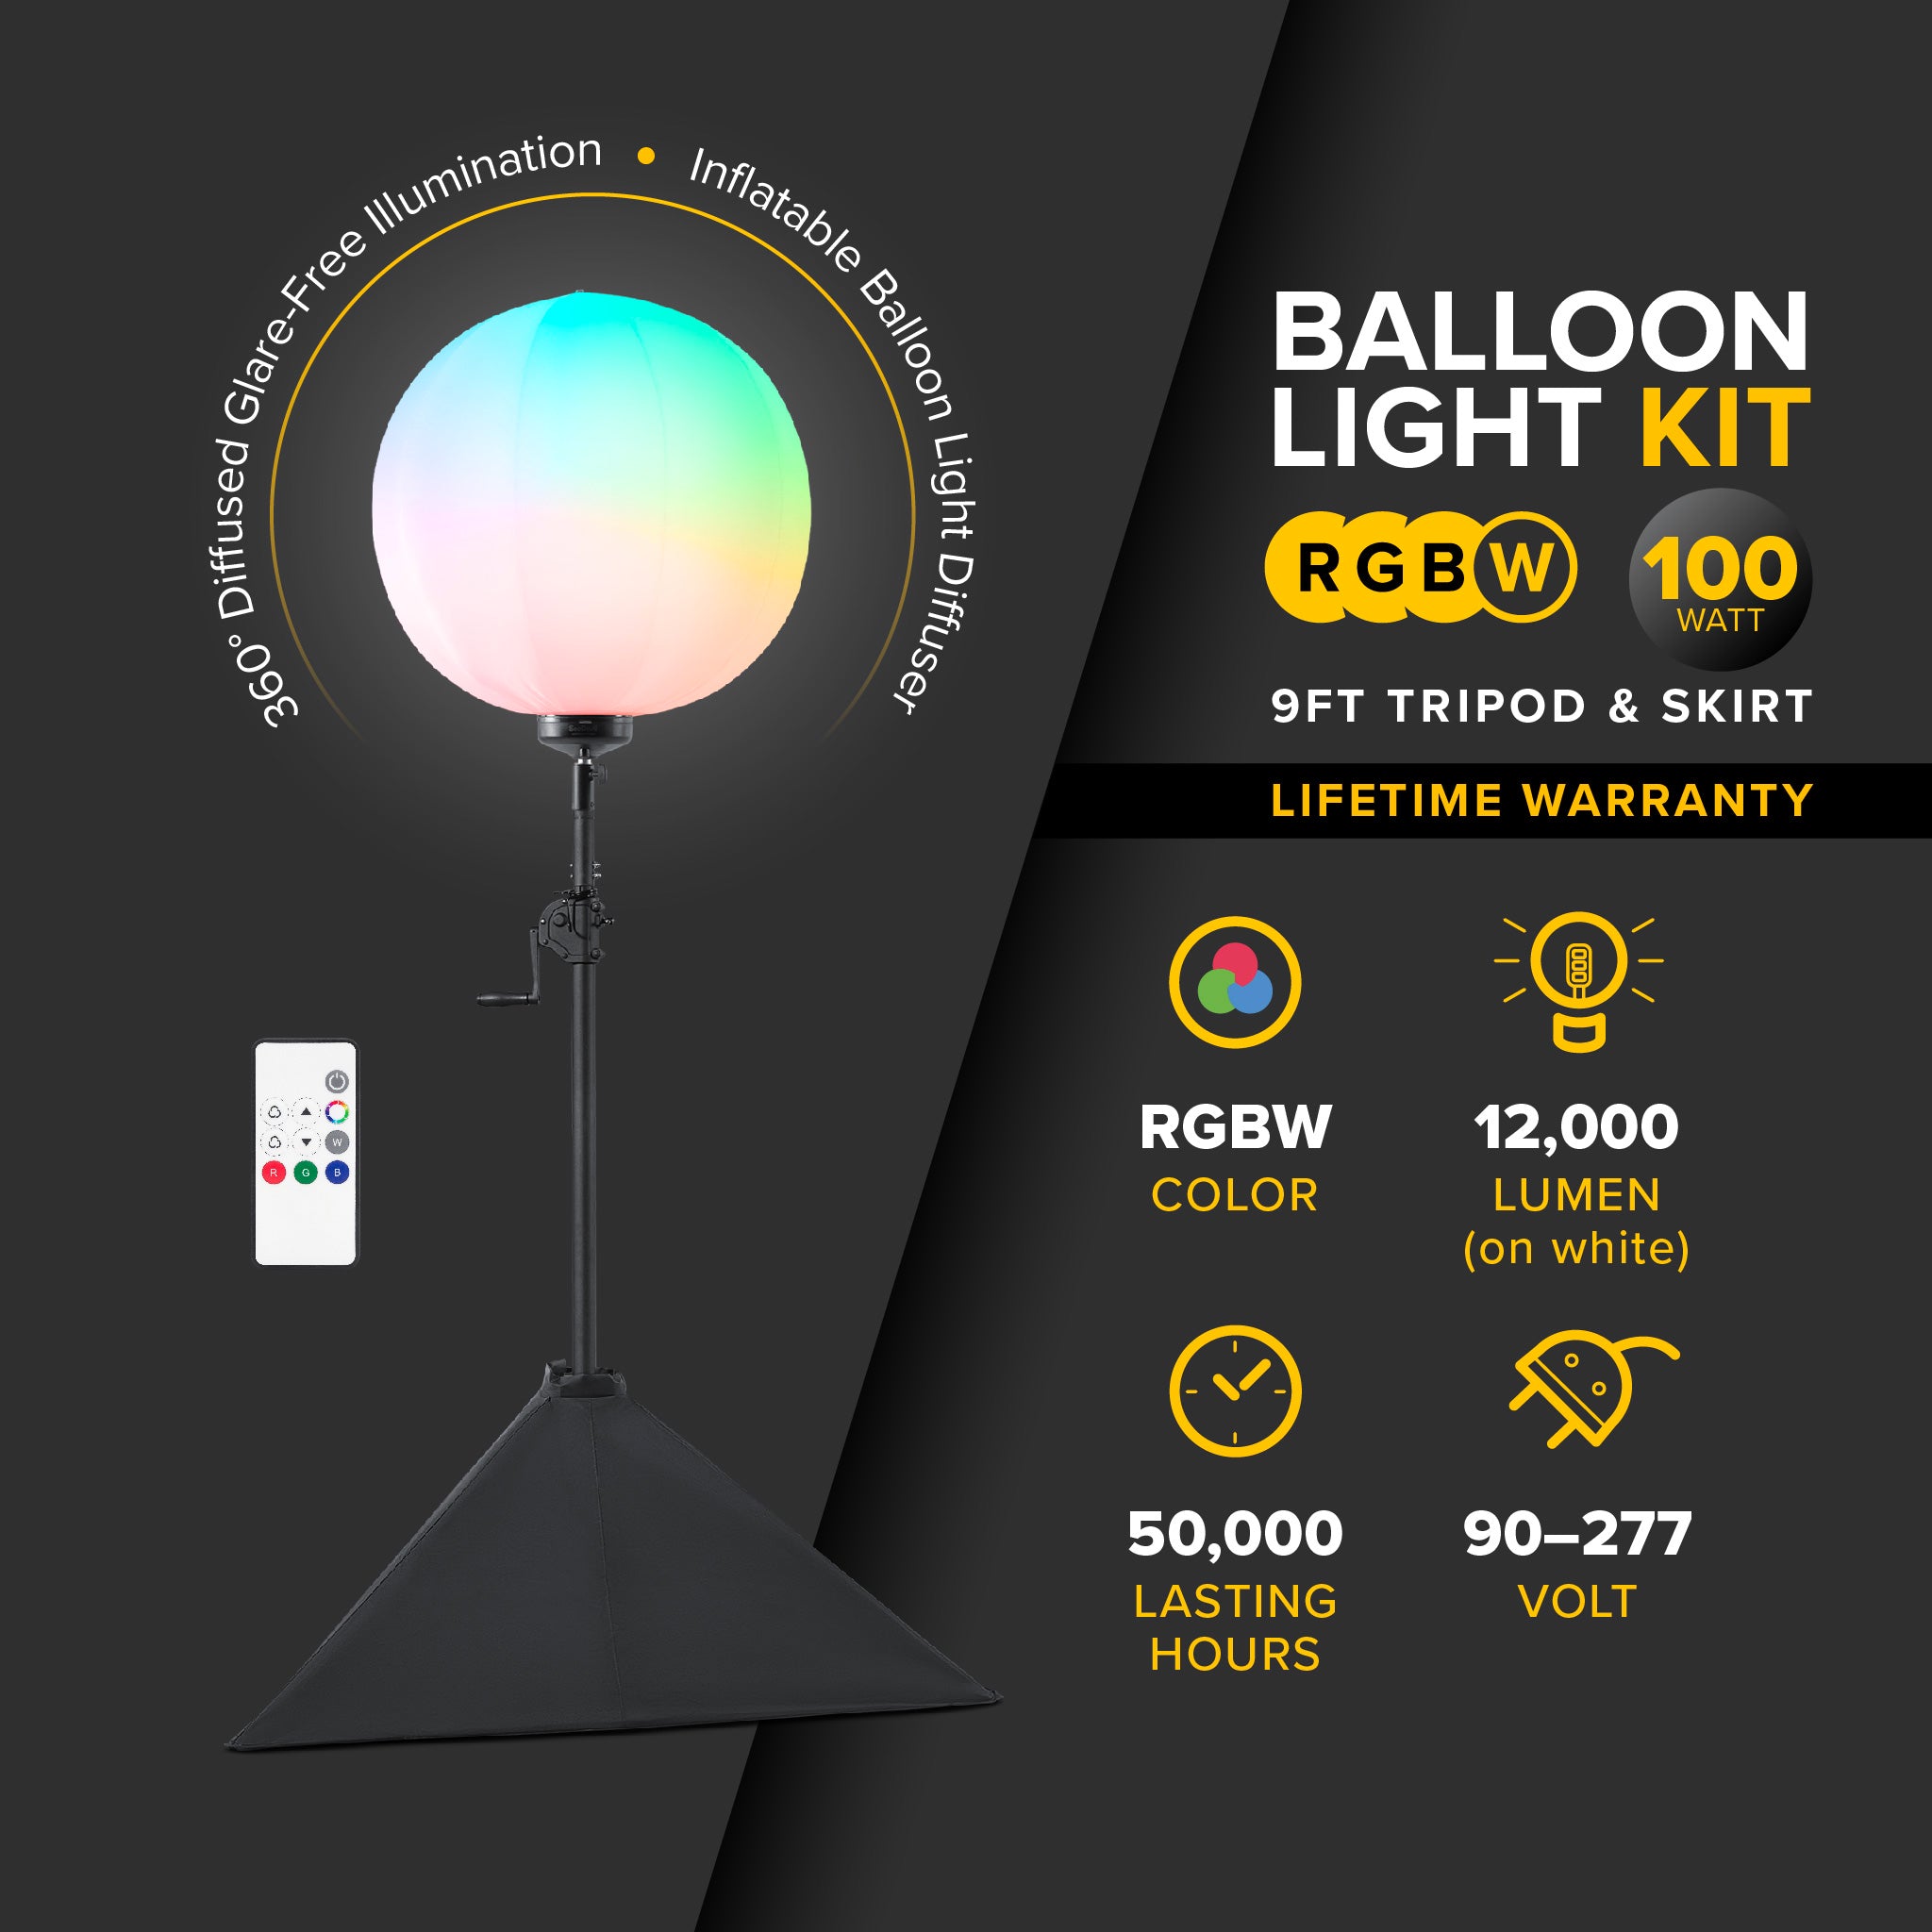 G3 Heavy-Duty RGBW 100 Watt Balloon Light Kit